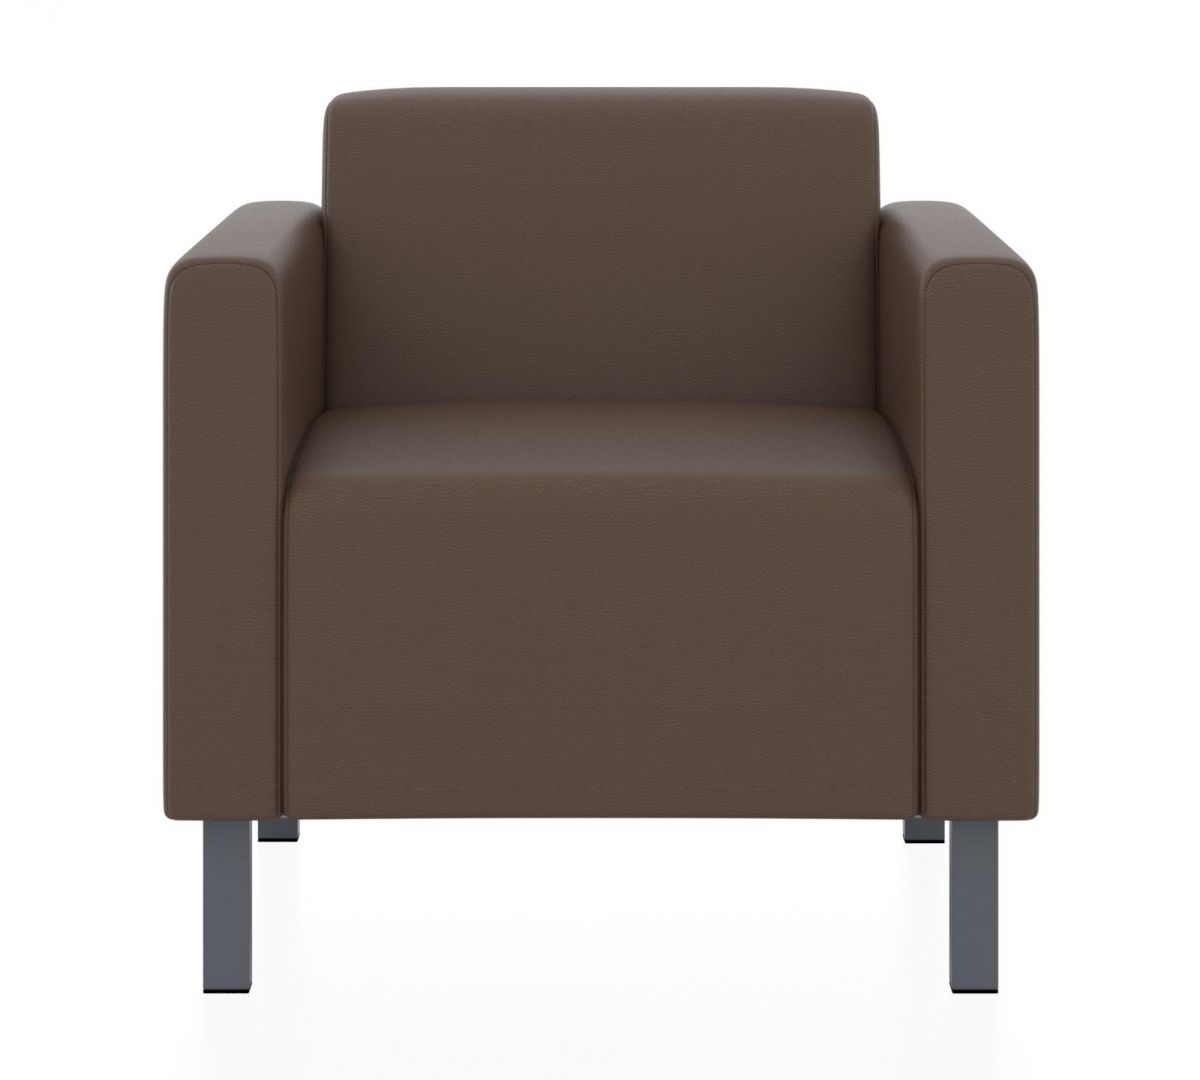 Кресло Евро (Цвет обивки коричневый)